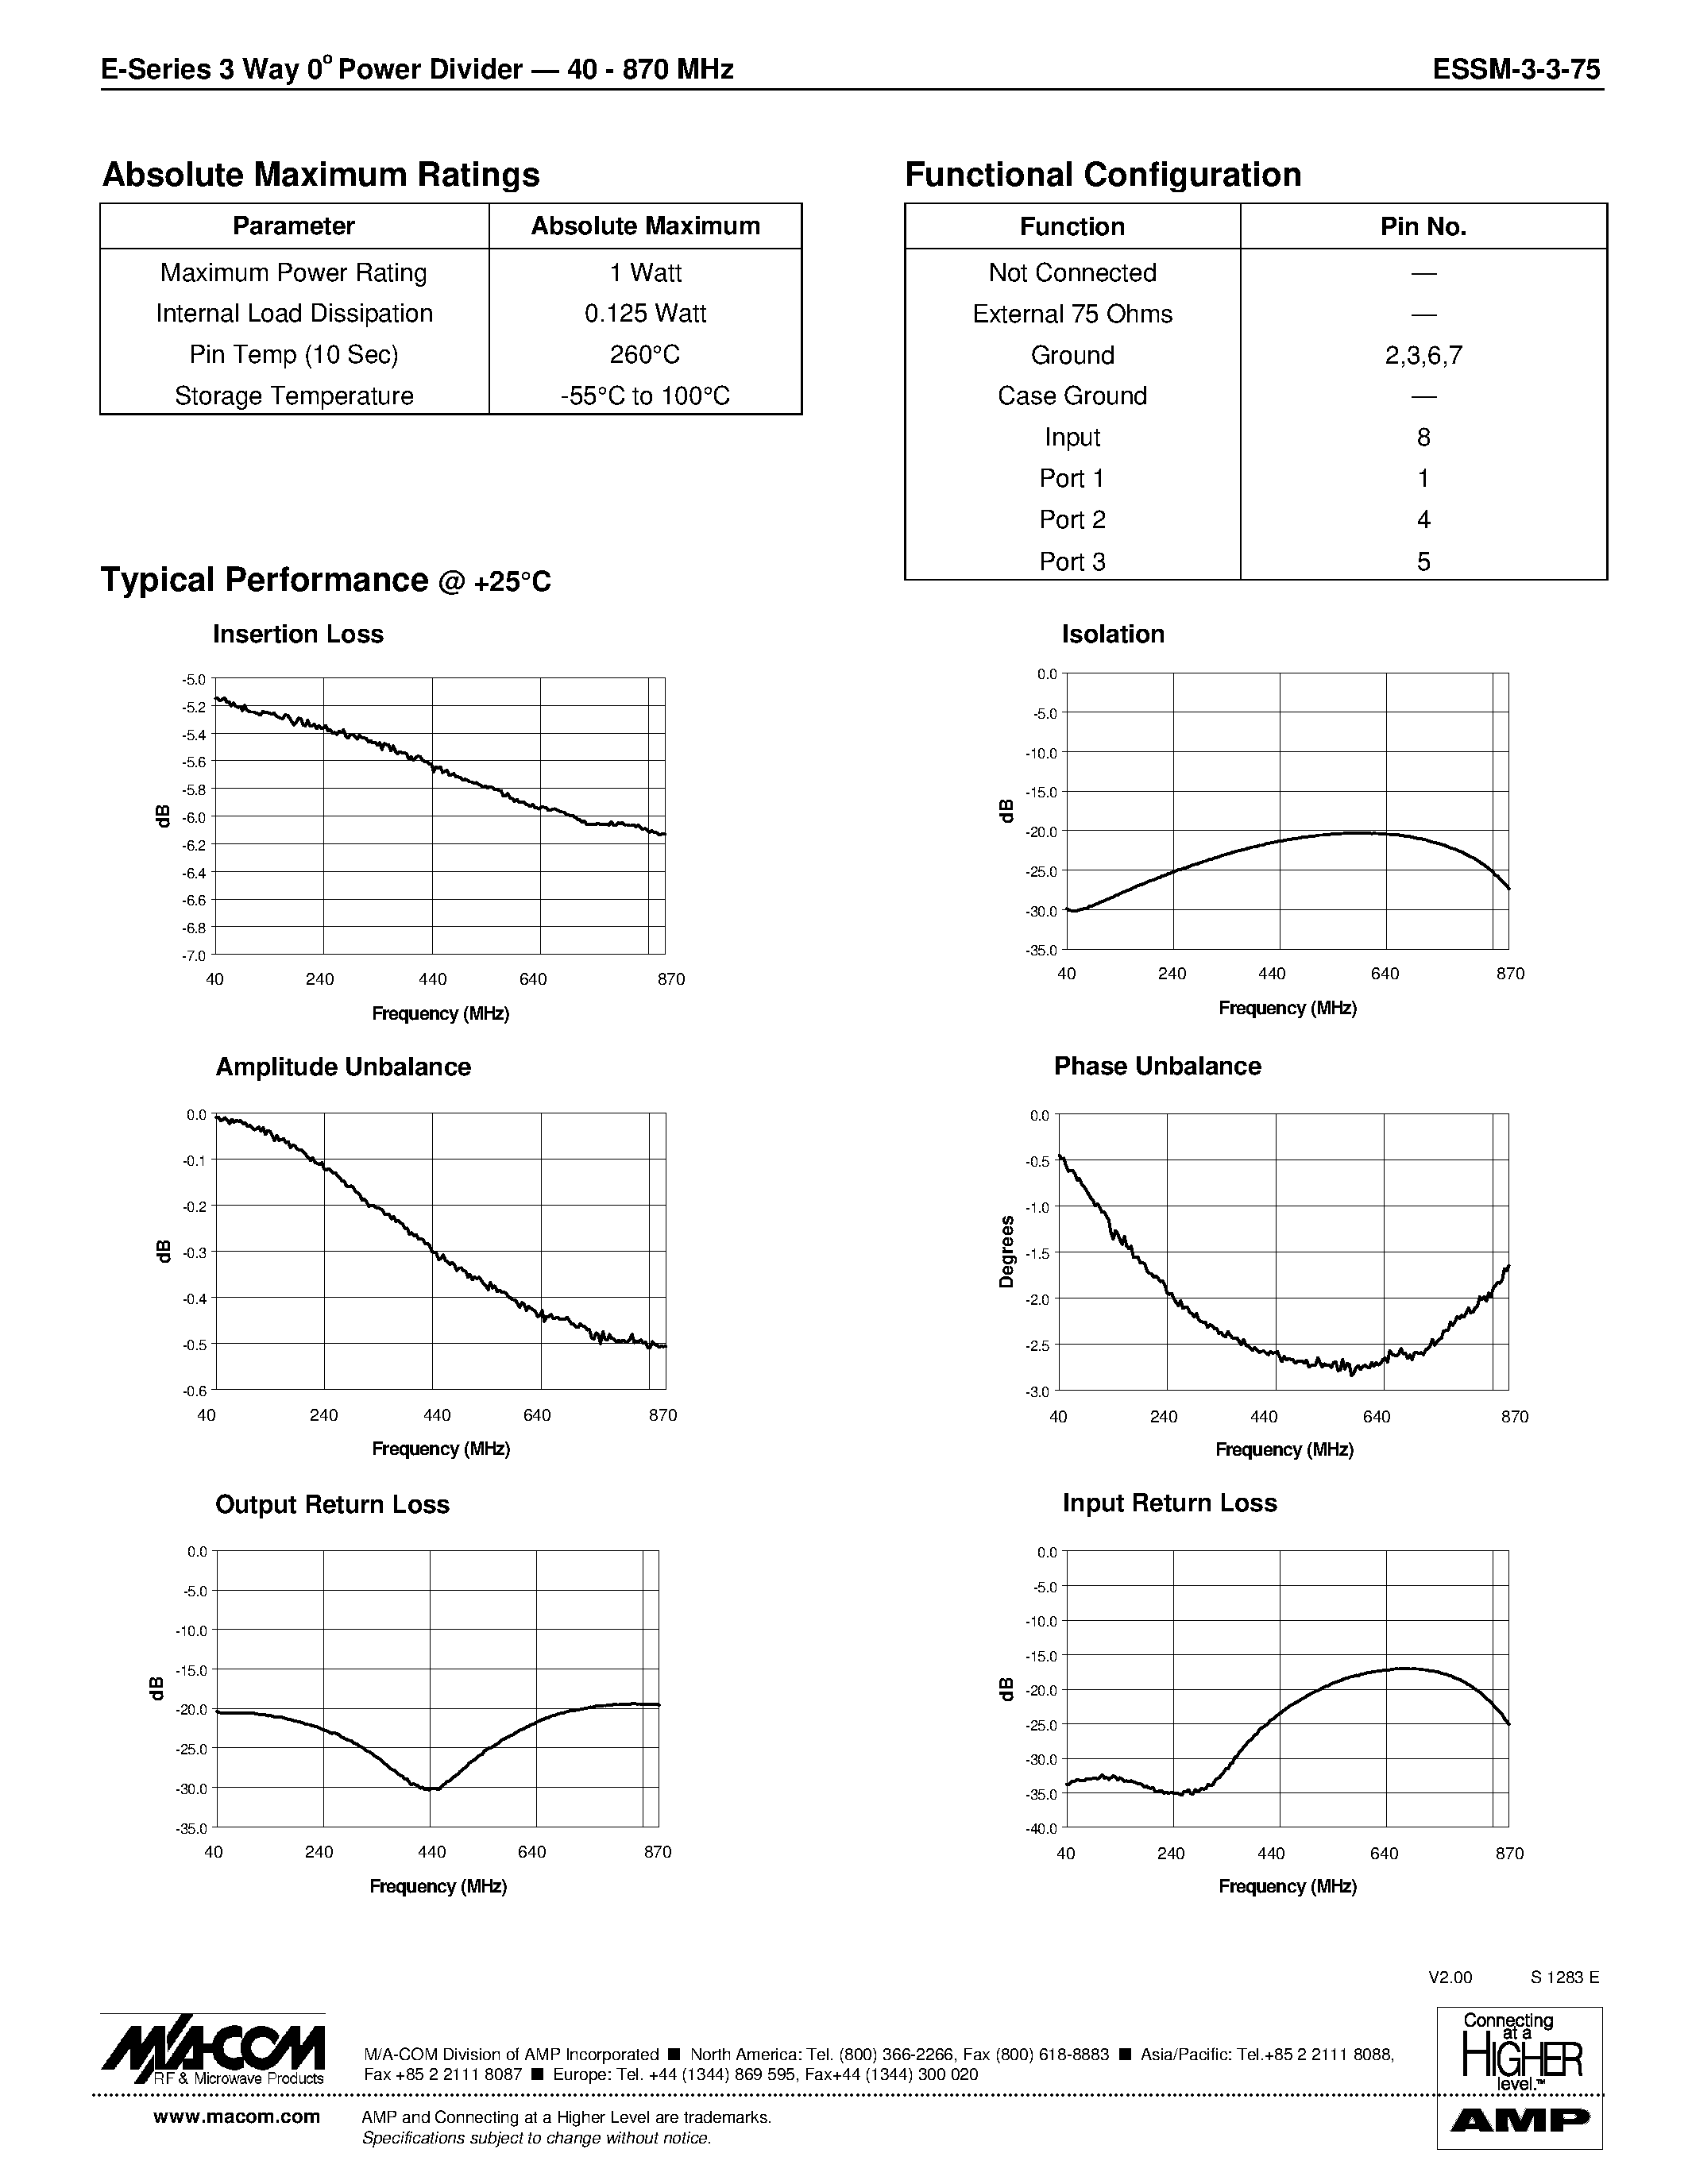 Datasheet ESSM-3-3-75 - E-Series 3-Way 0 Power Divider 40 - 870 MHz page 2